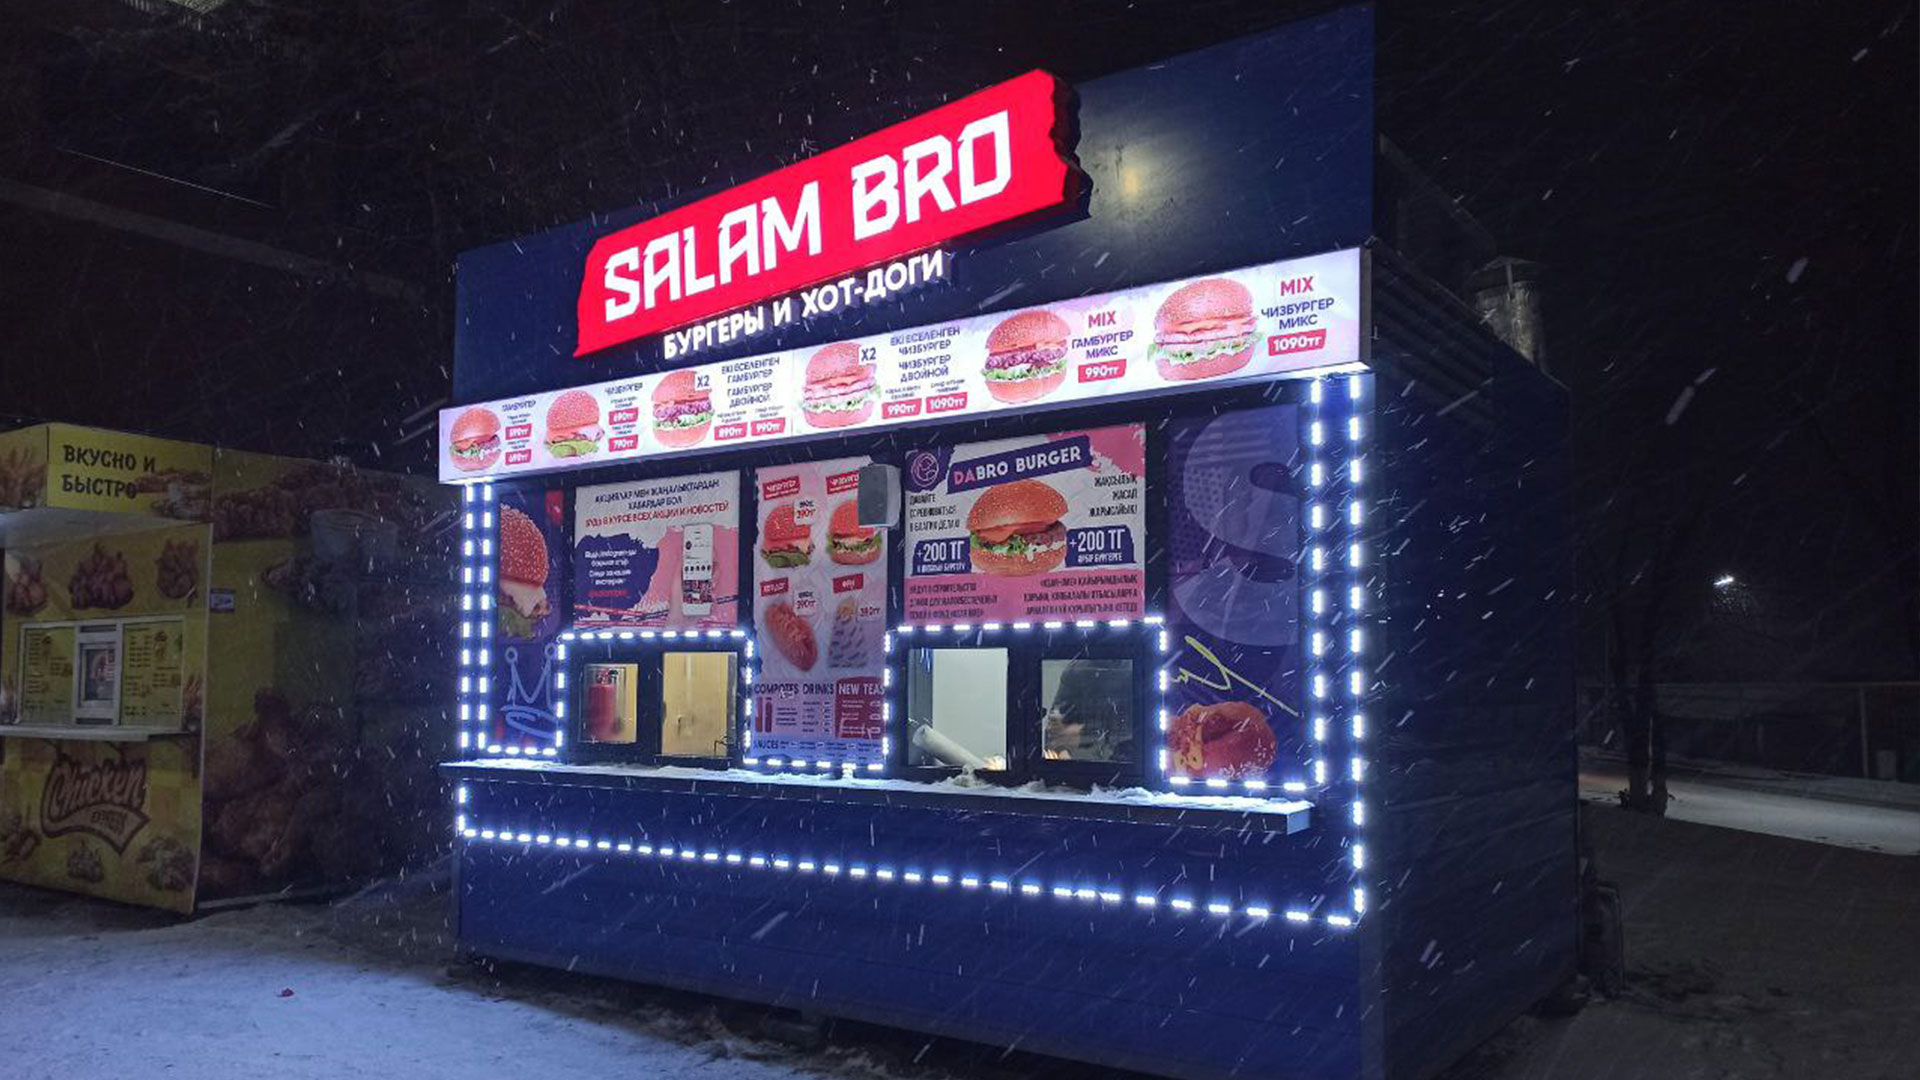 Производство рекламы "Salam bro"